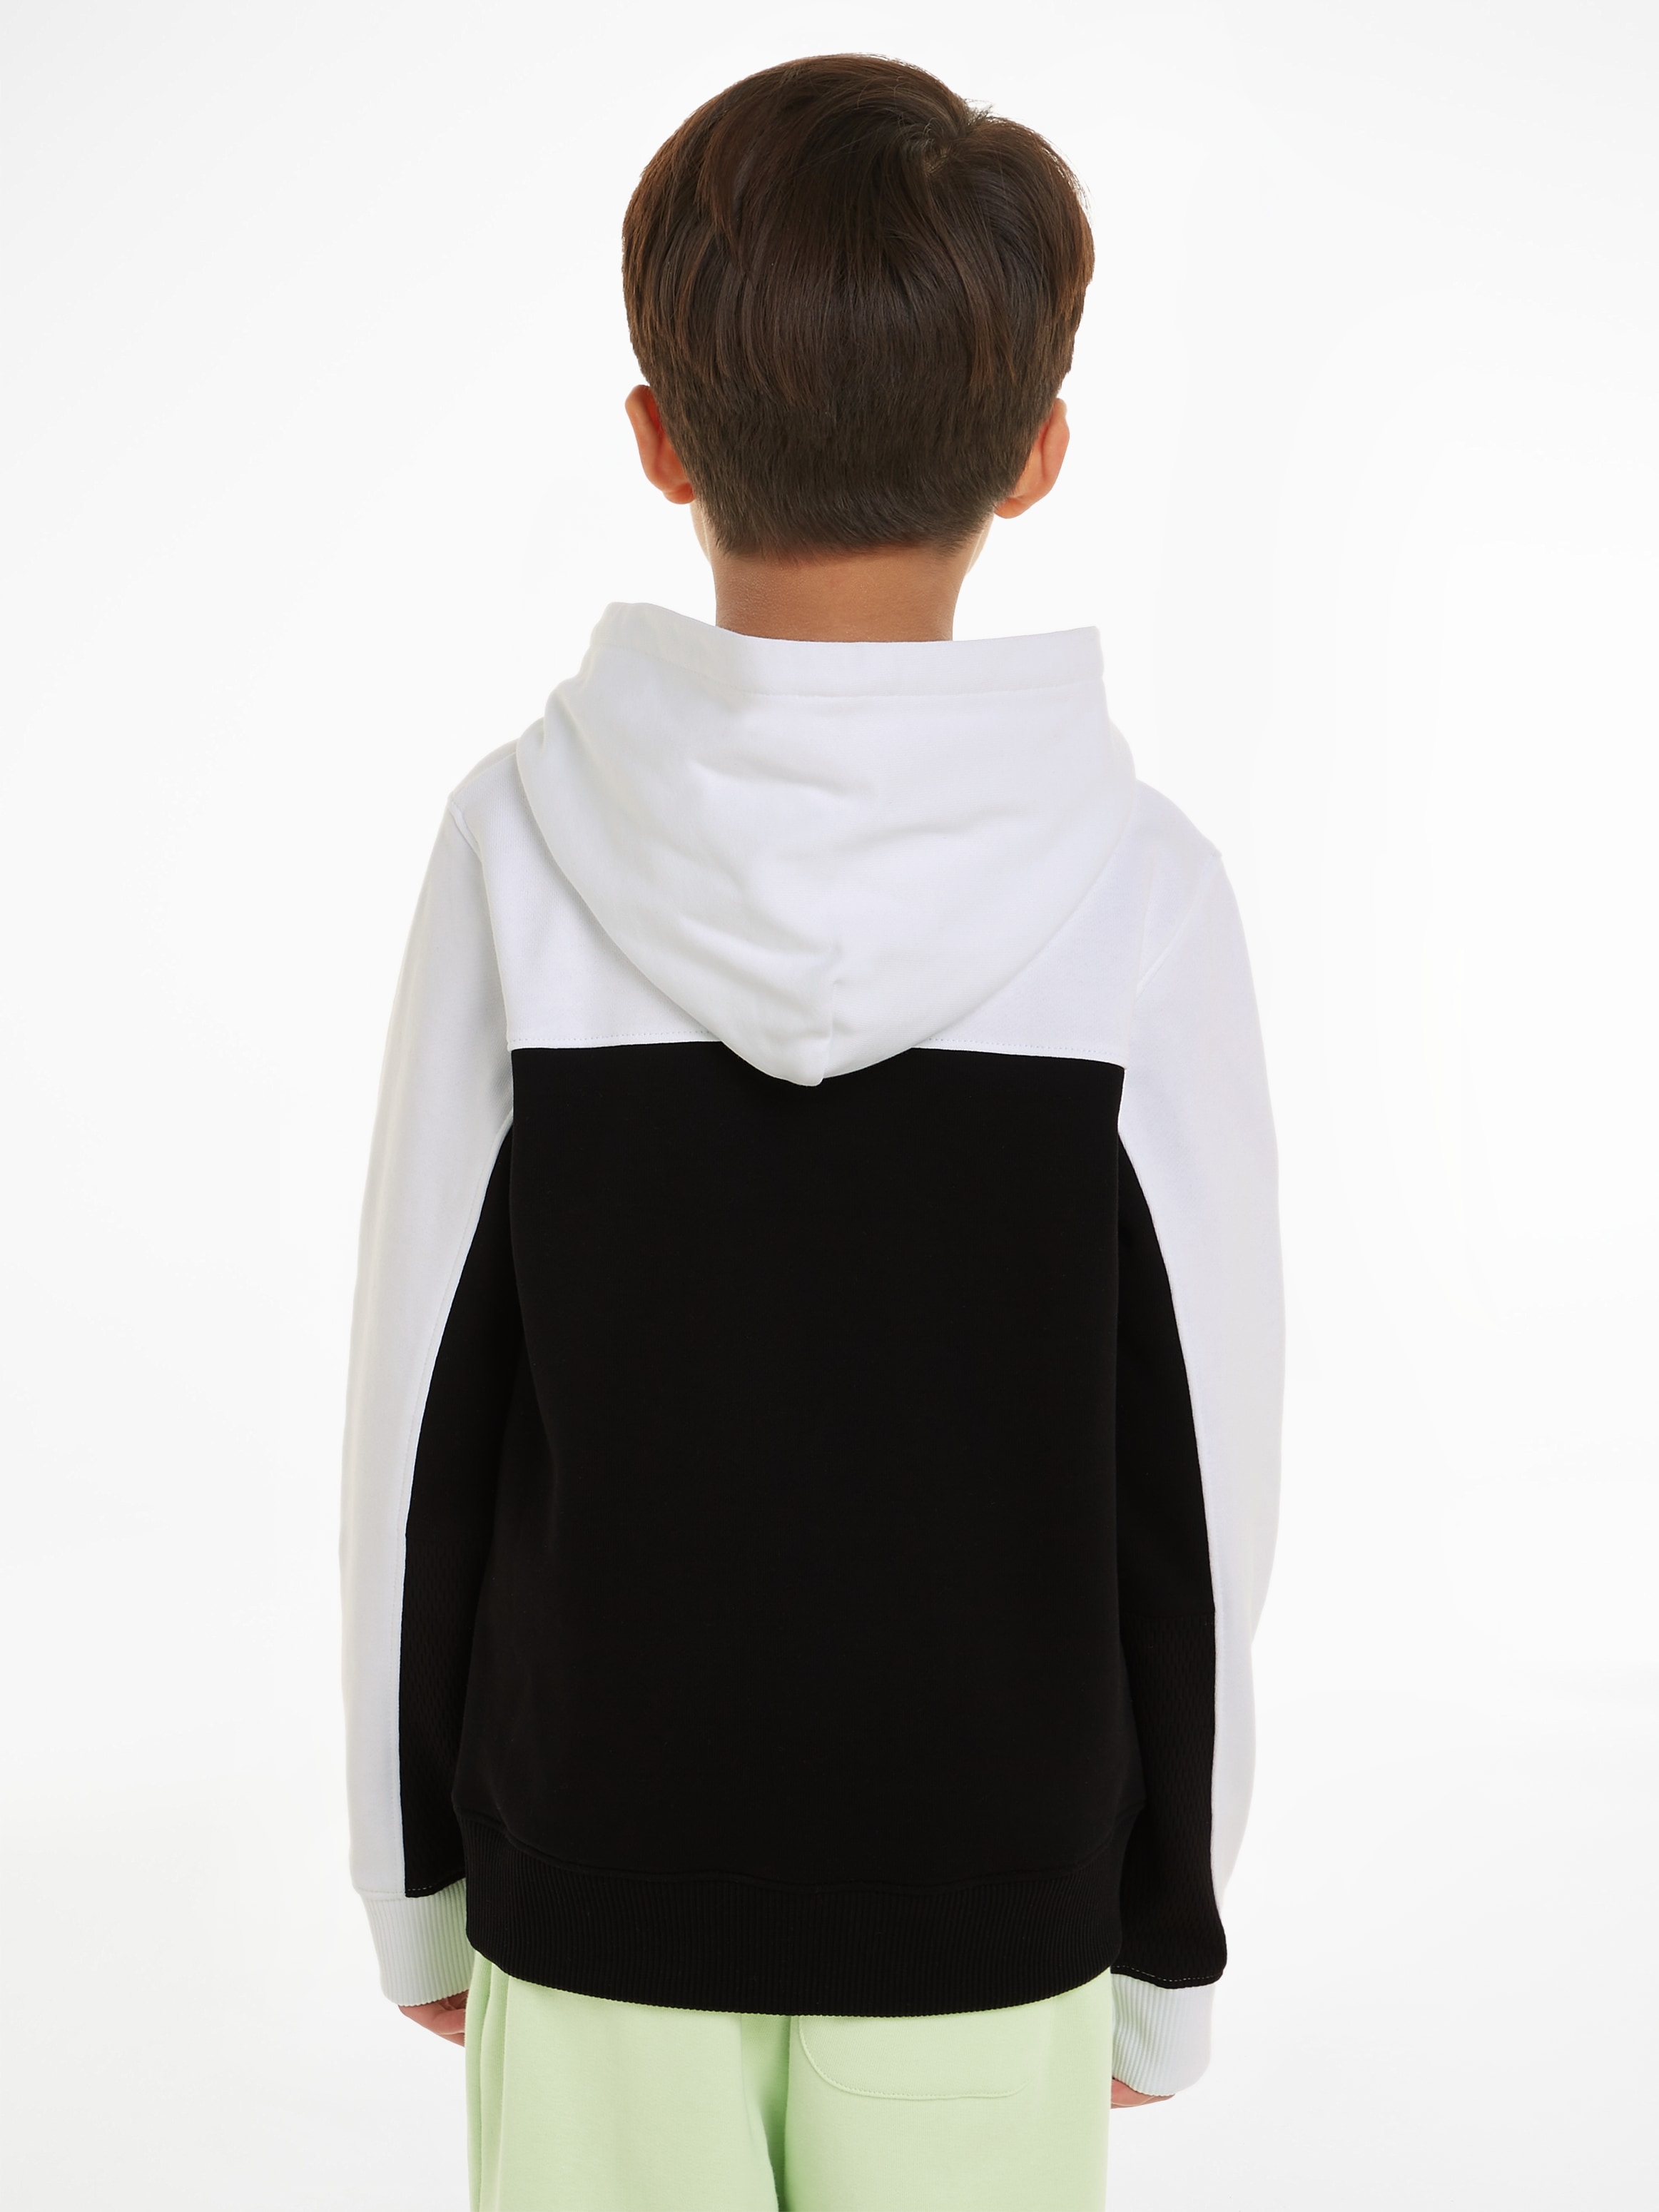 Calvin Klein Jeans Sweatshirt »TERRY COLOR BLOCK REG. HOODIE«, für Kinder bis 16 Jahre